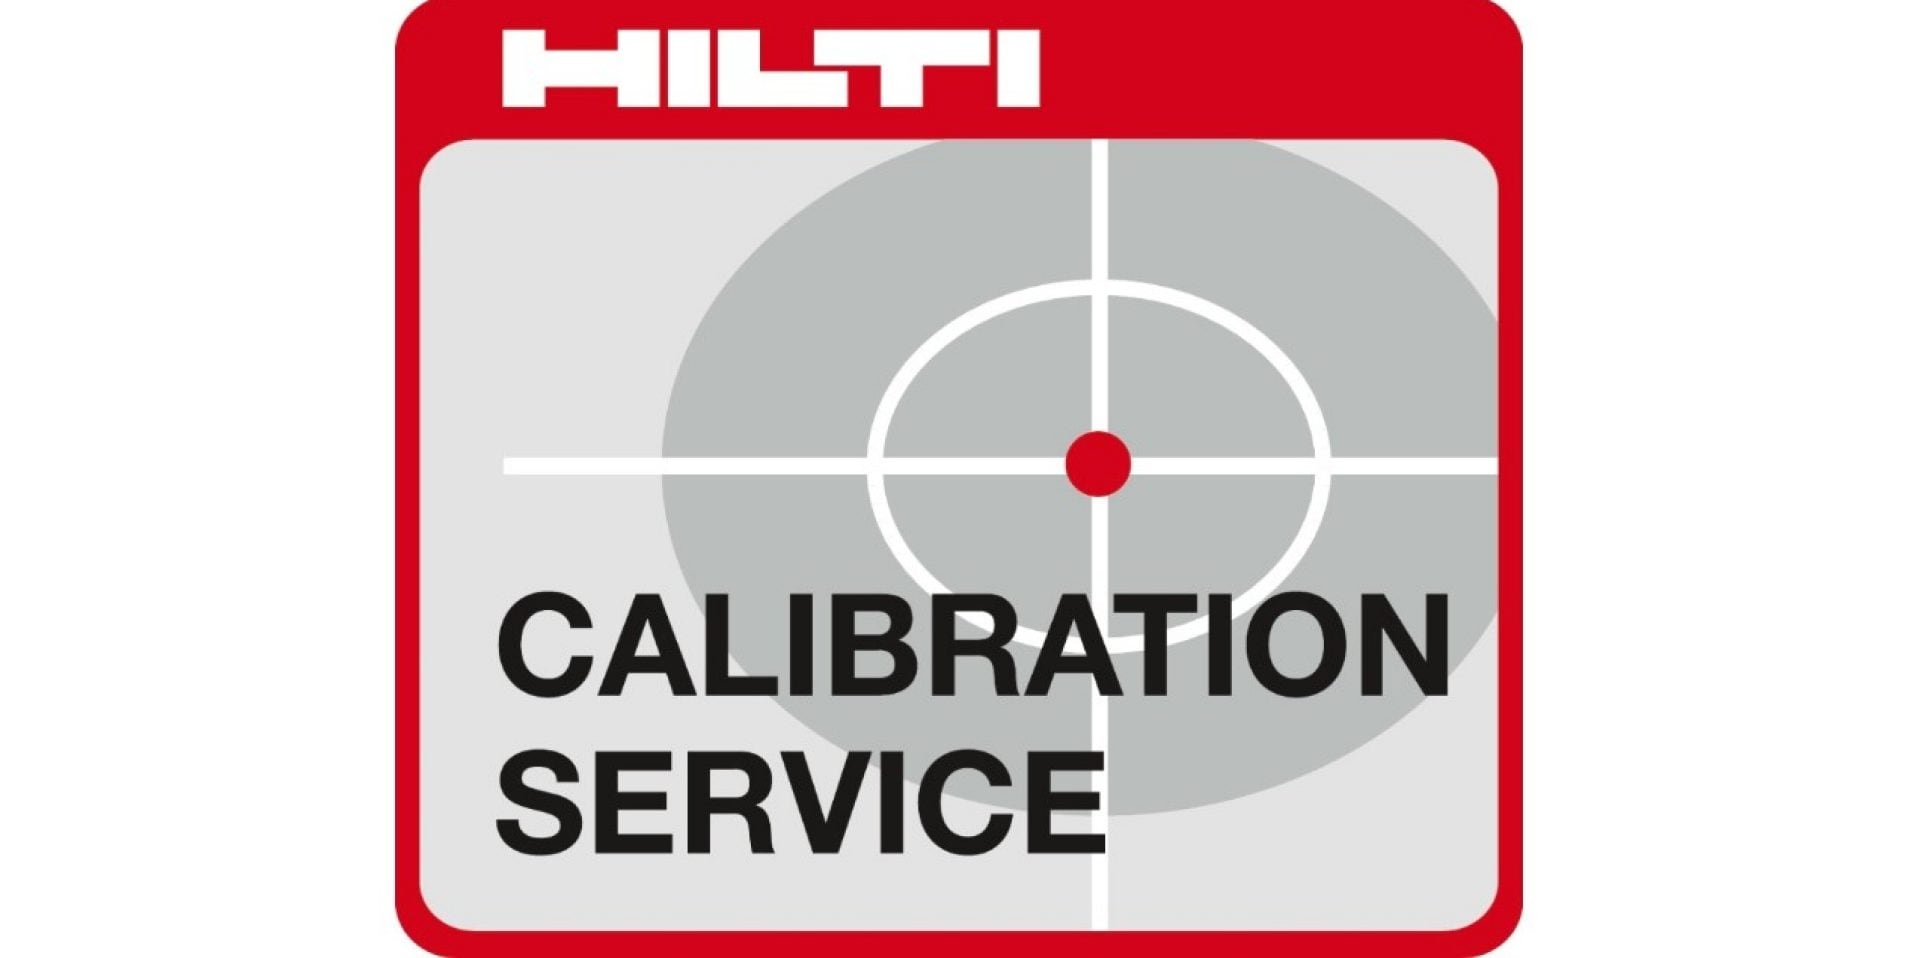 Hilti calibration services